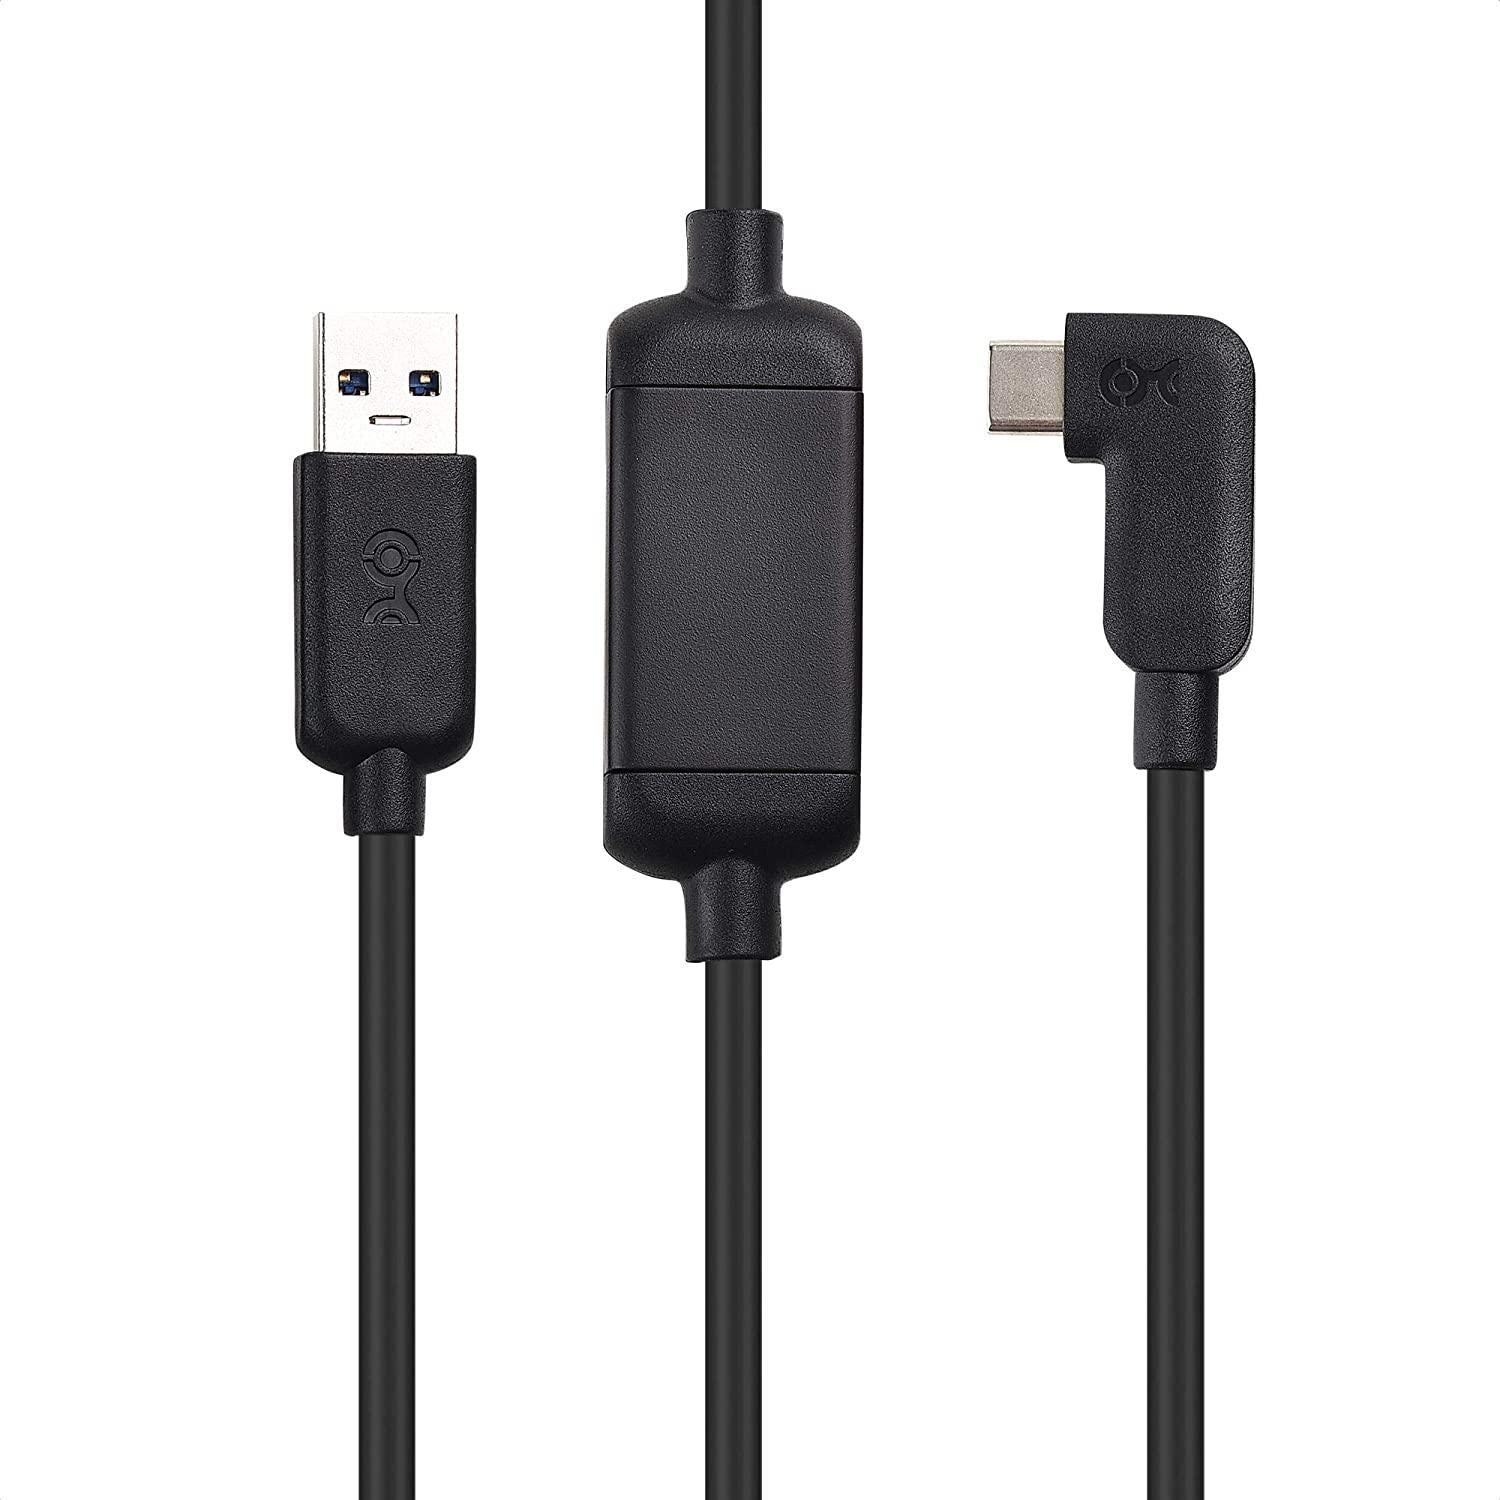 Cable Matters aktiv 7,5 m USB-C til USB-A VR Link-kabel for Oculus Quest 2 USB3.2 Gen1 5 Gbps 3A Super Speed VR Link-kabel